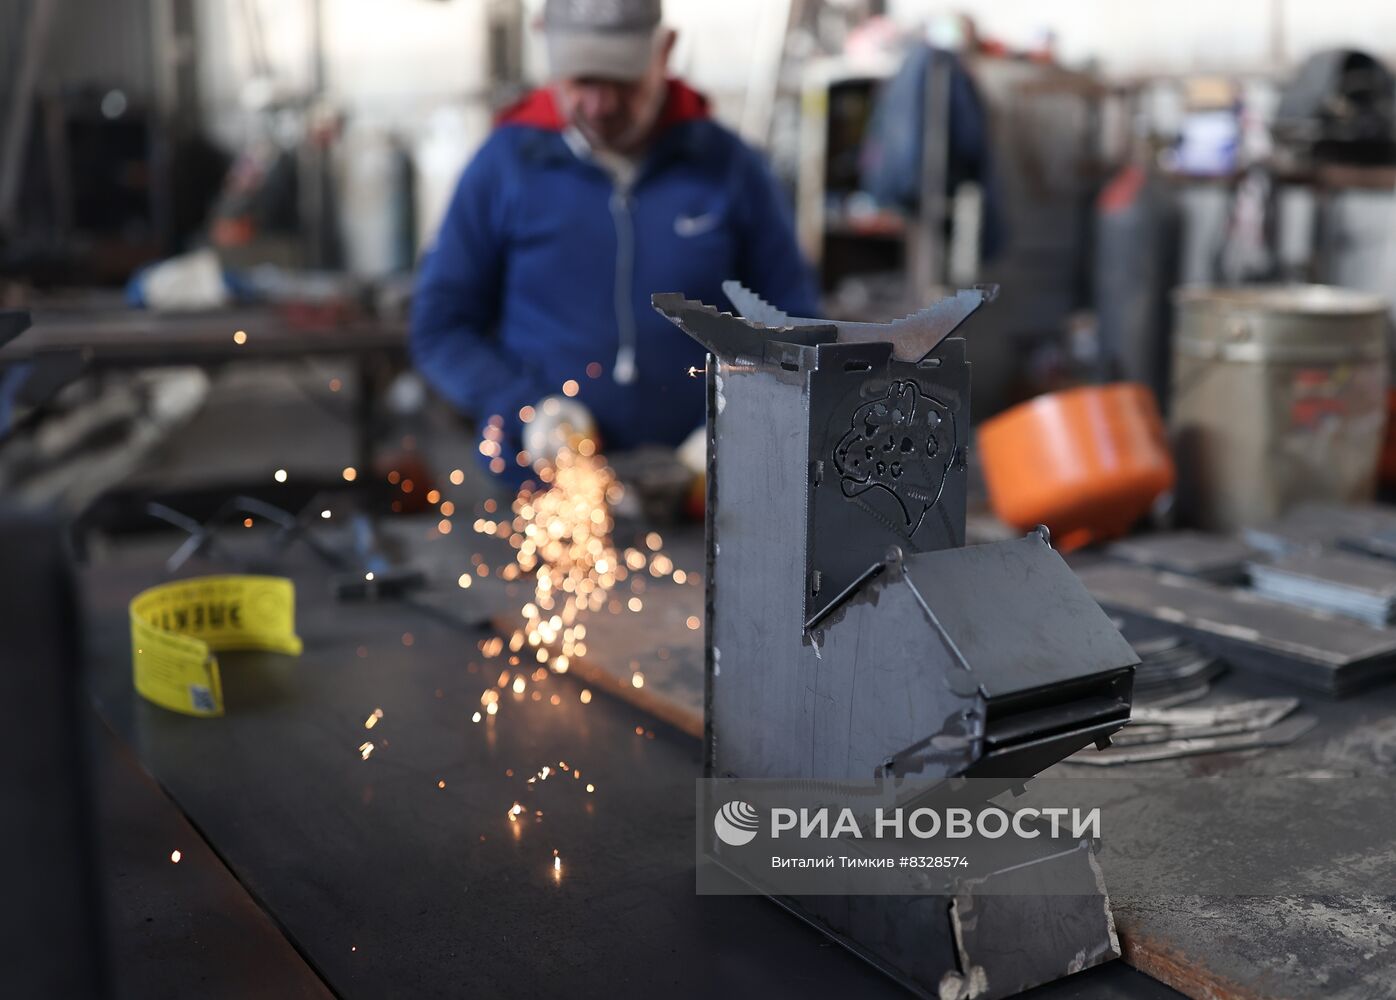 Производство полевых обогревателей в Новороссийске